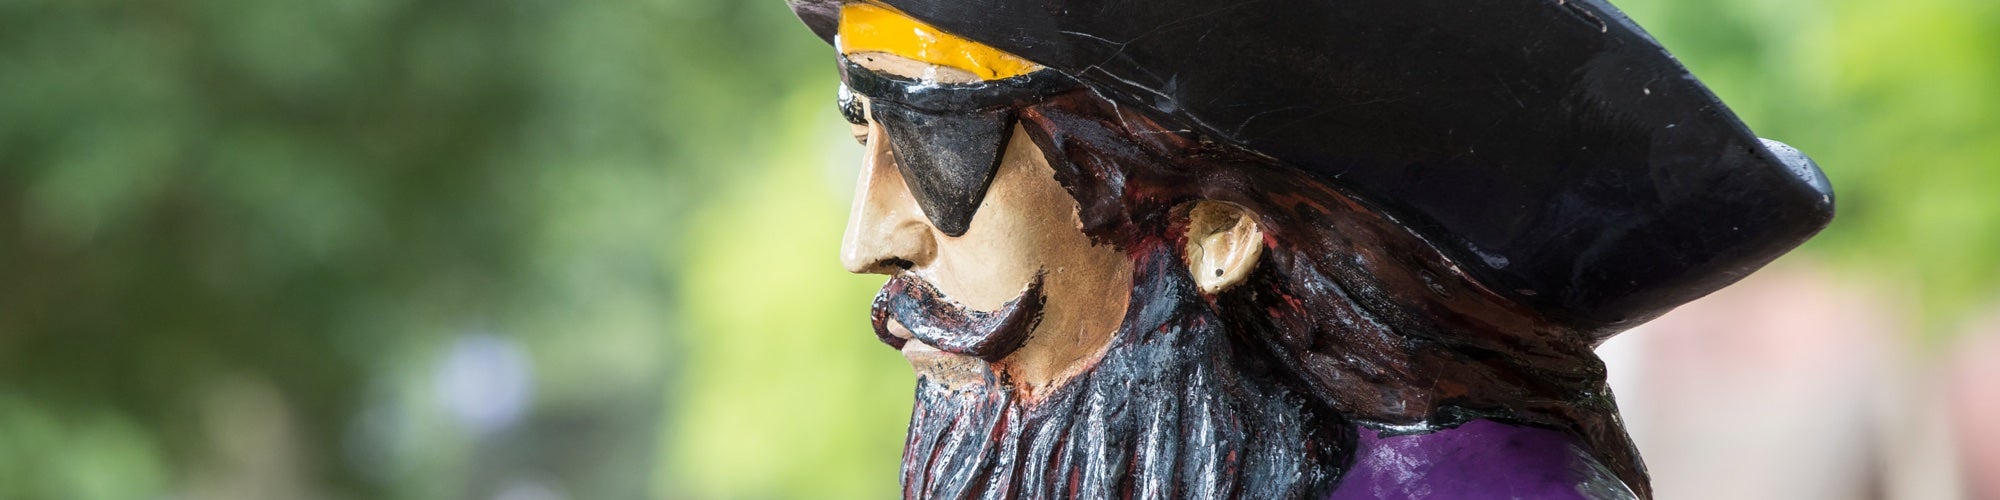 Closeup of pirate statue